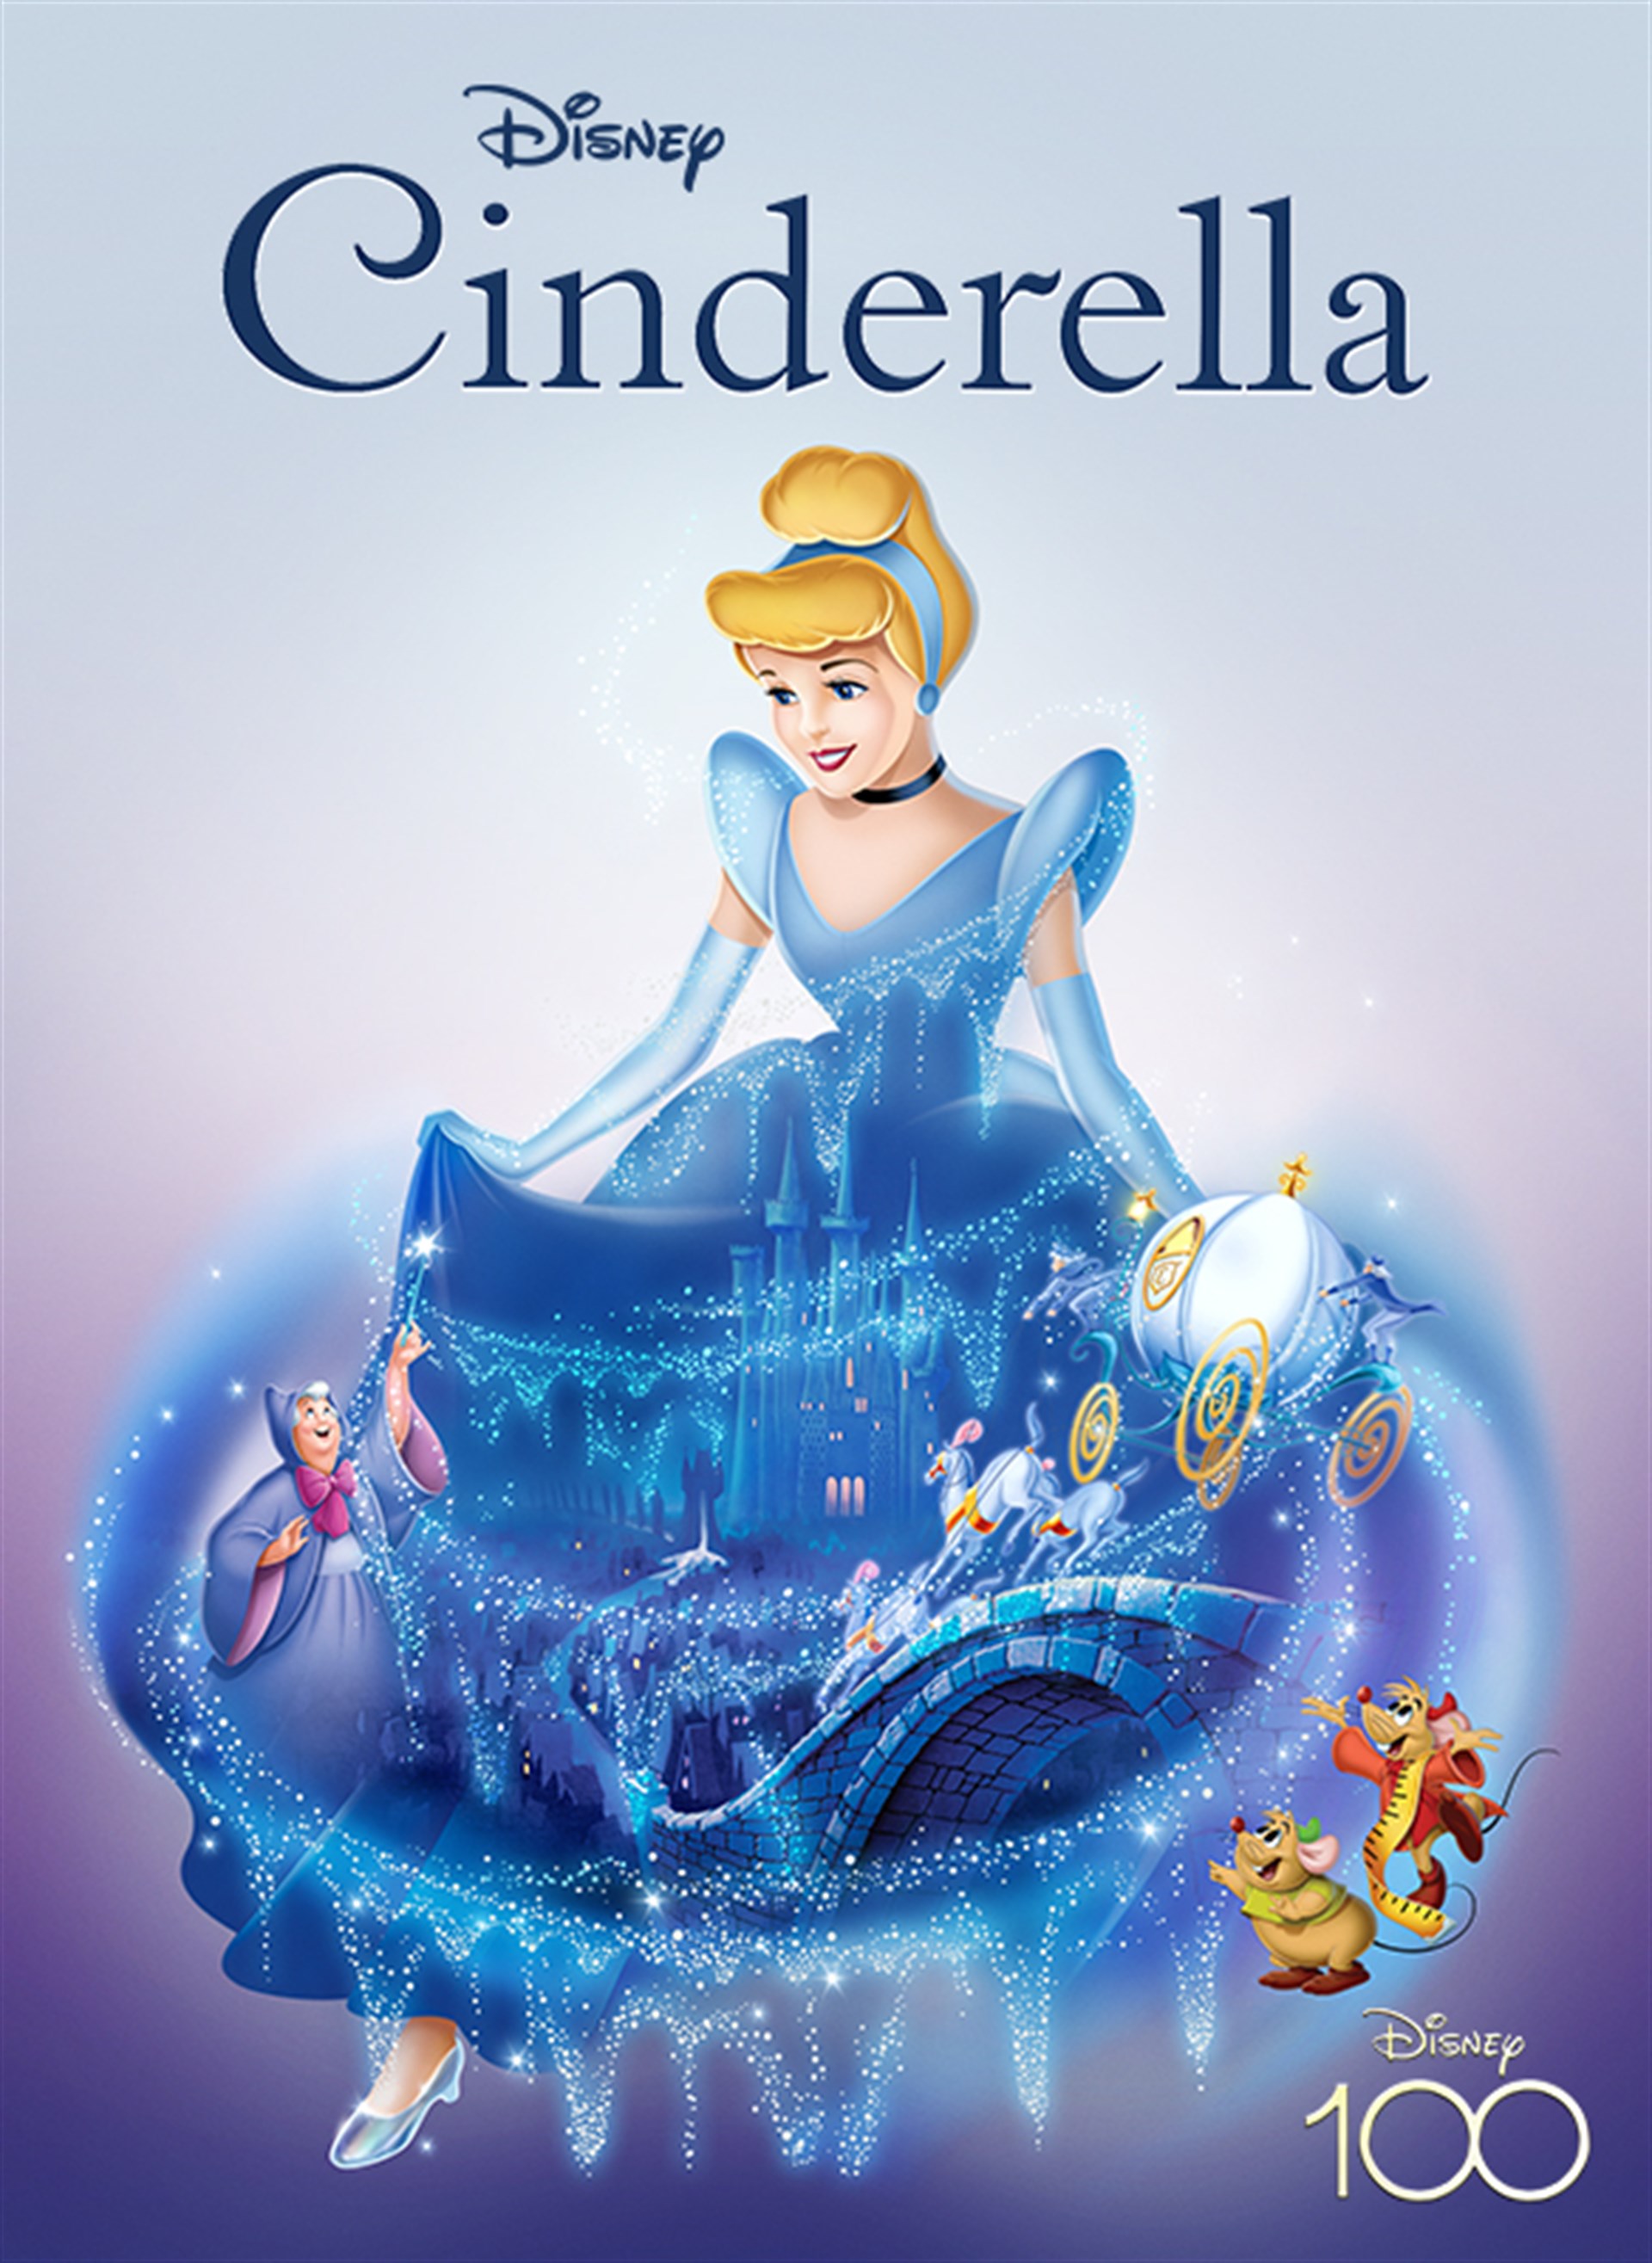 Cinderella Movie Free Download porn app